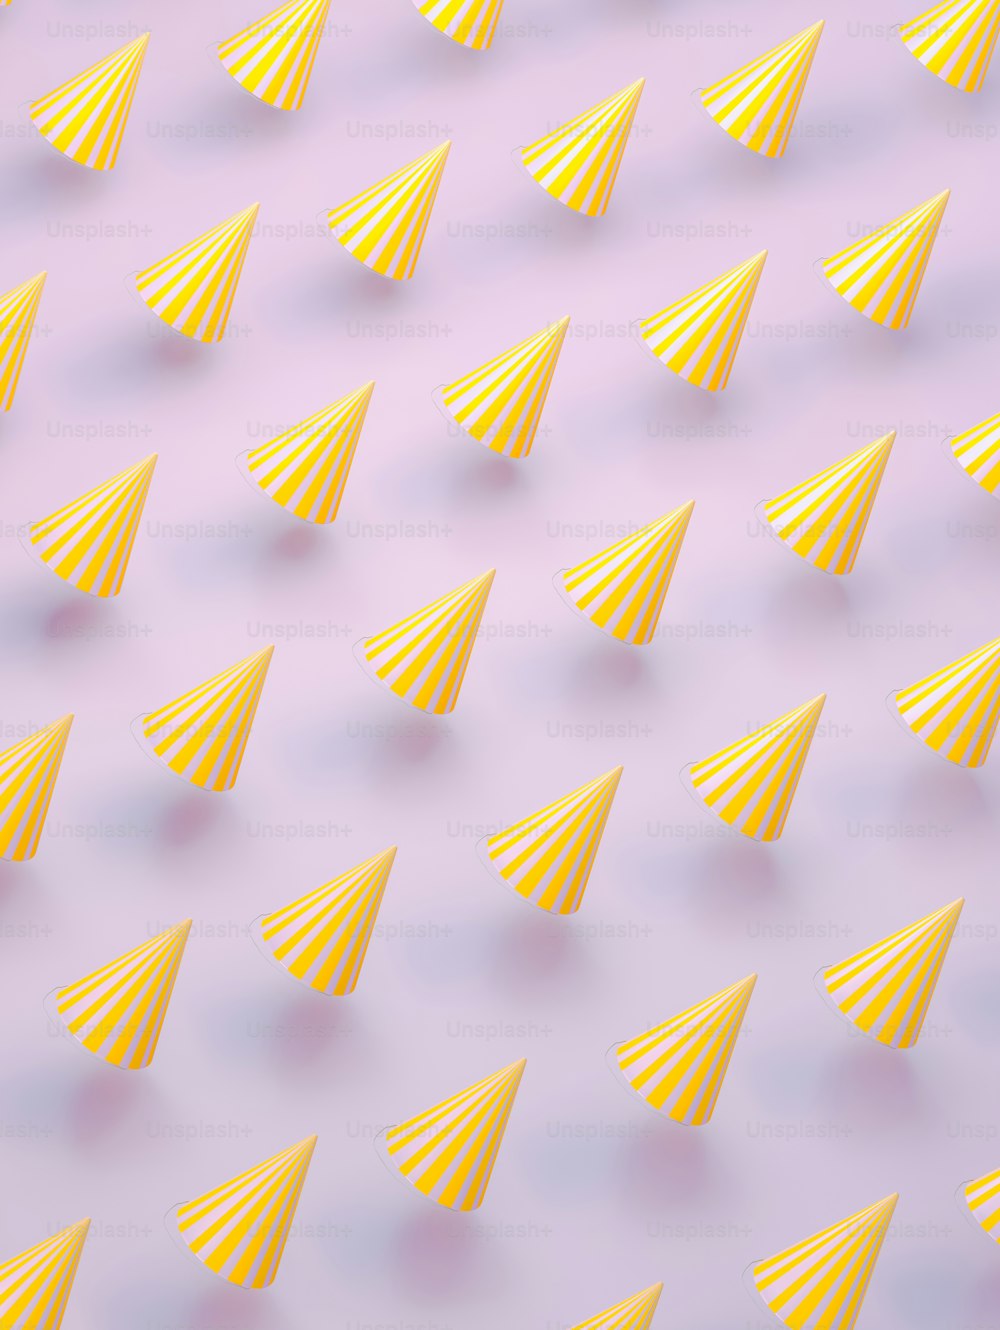 un patrón de conos de papel amarillo sobre un fondo púrpura